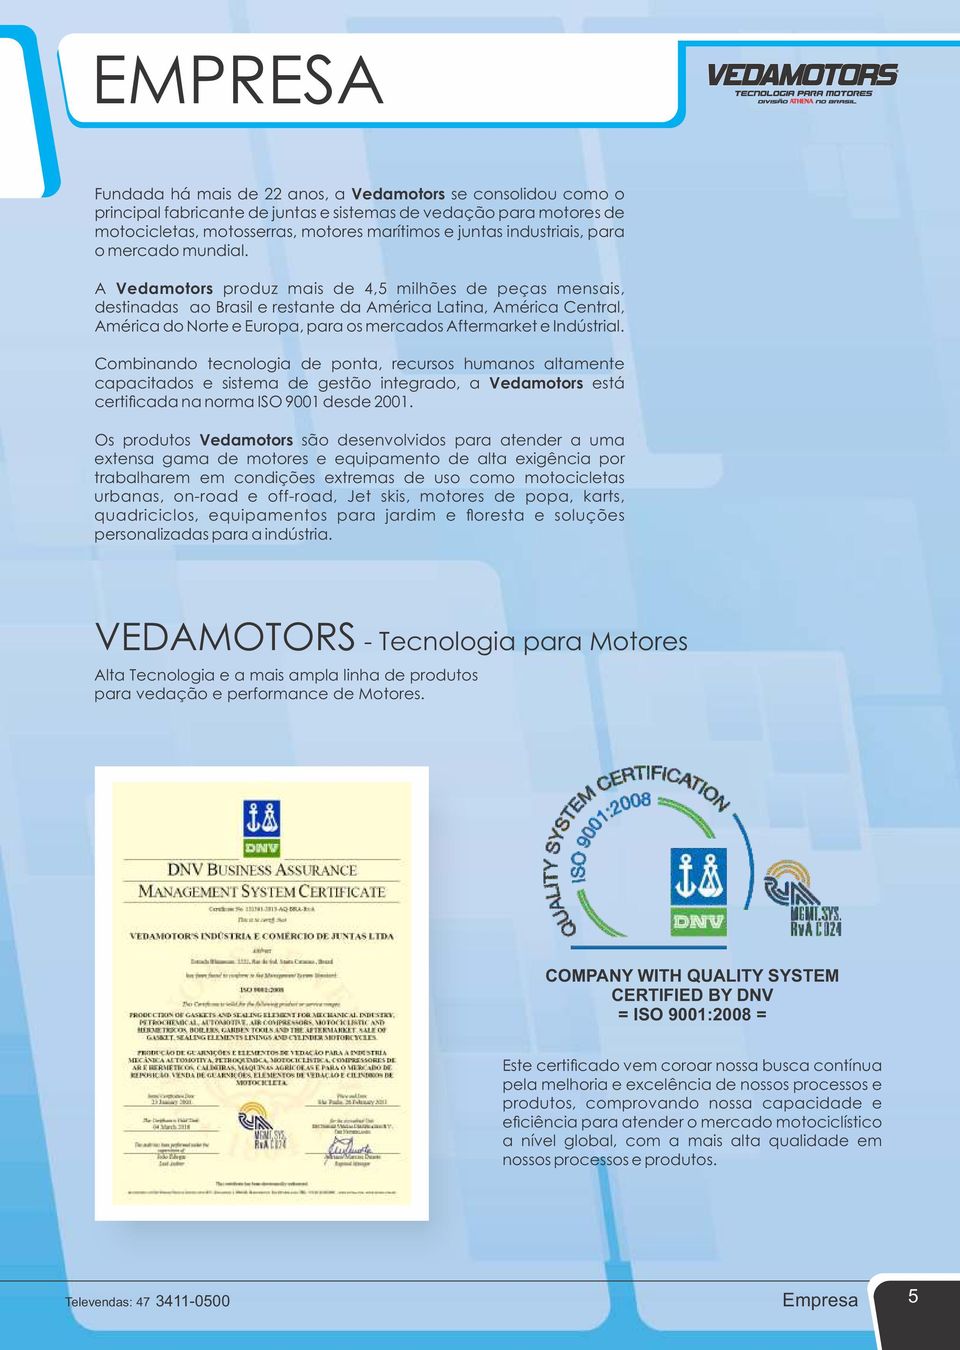 A Vedamotors produz mais de 4,5 milhões de peças mensais, destinadas ao Brasil e restante da América Latina, América Central, América do Norte e Europa, para os mercados Aftermarket e Indústrial.